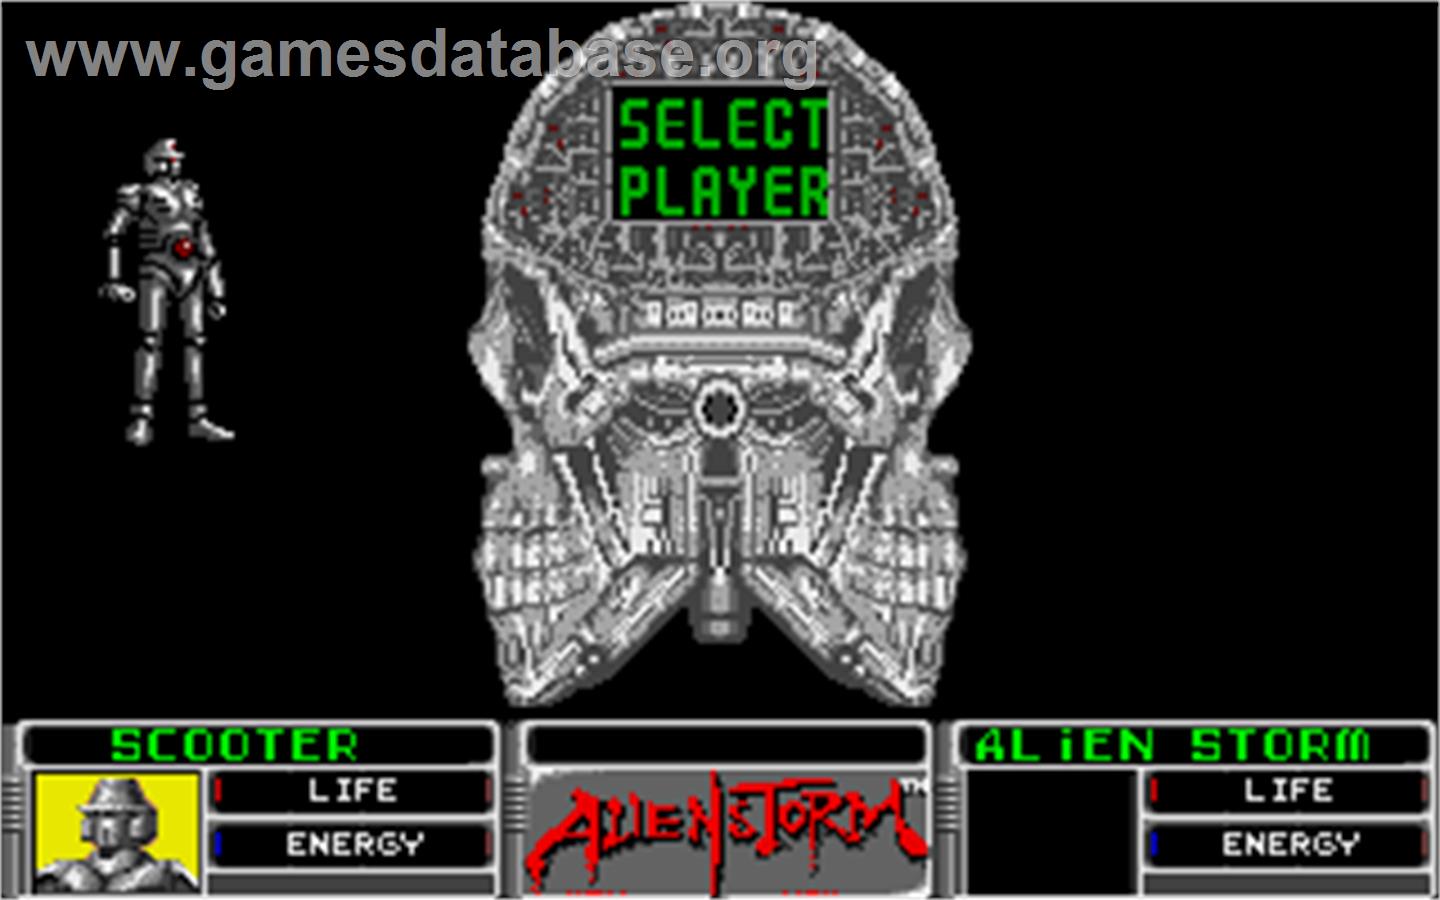 Alien Storm - Atari ST - Artwork - In Game